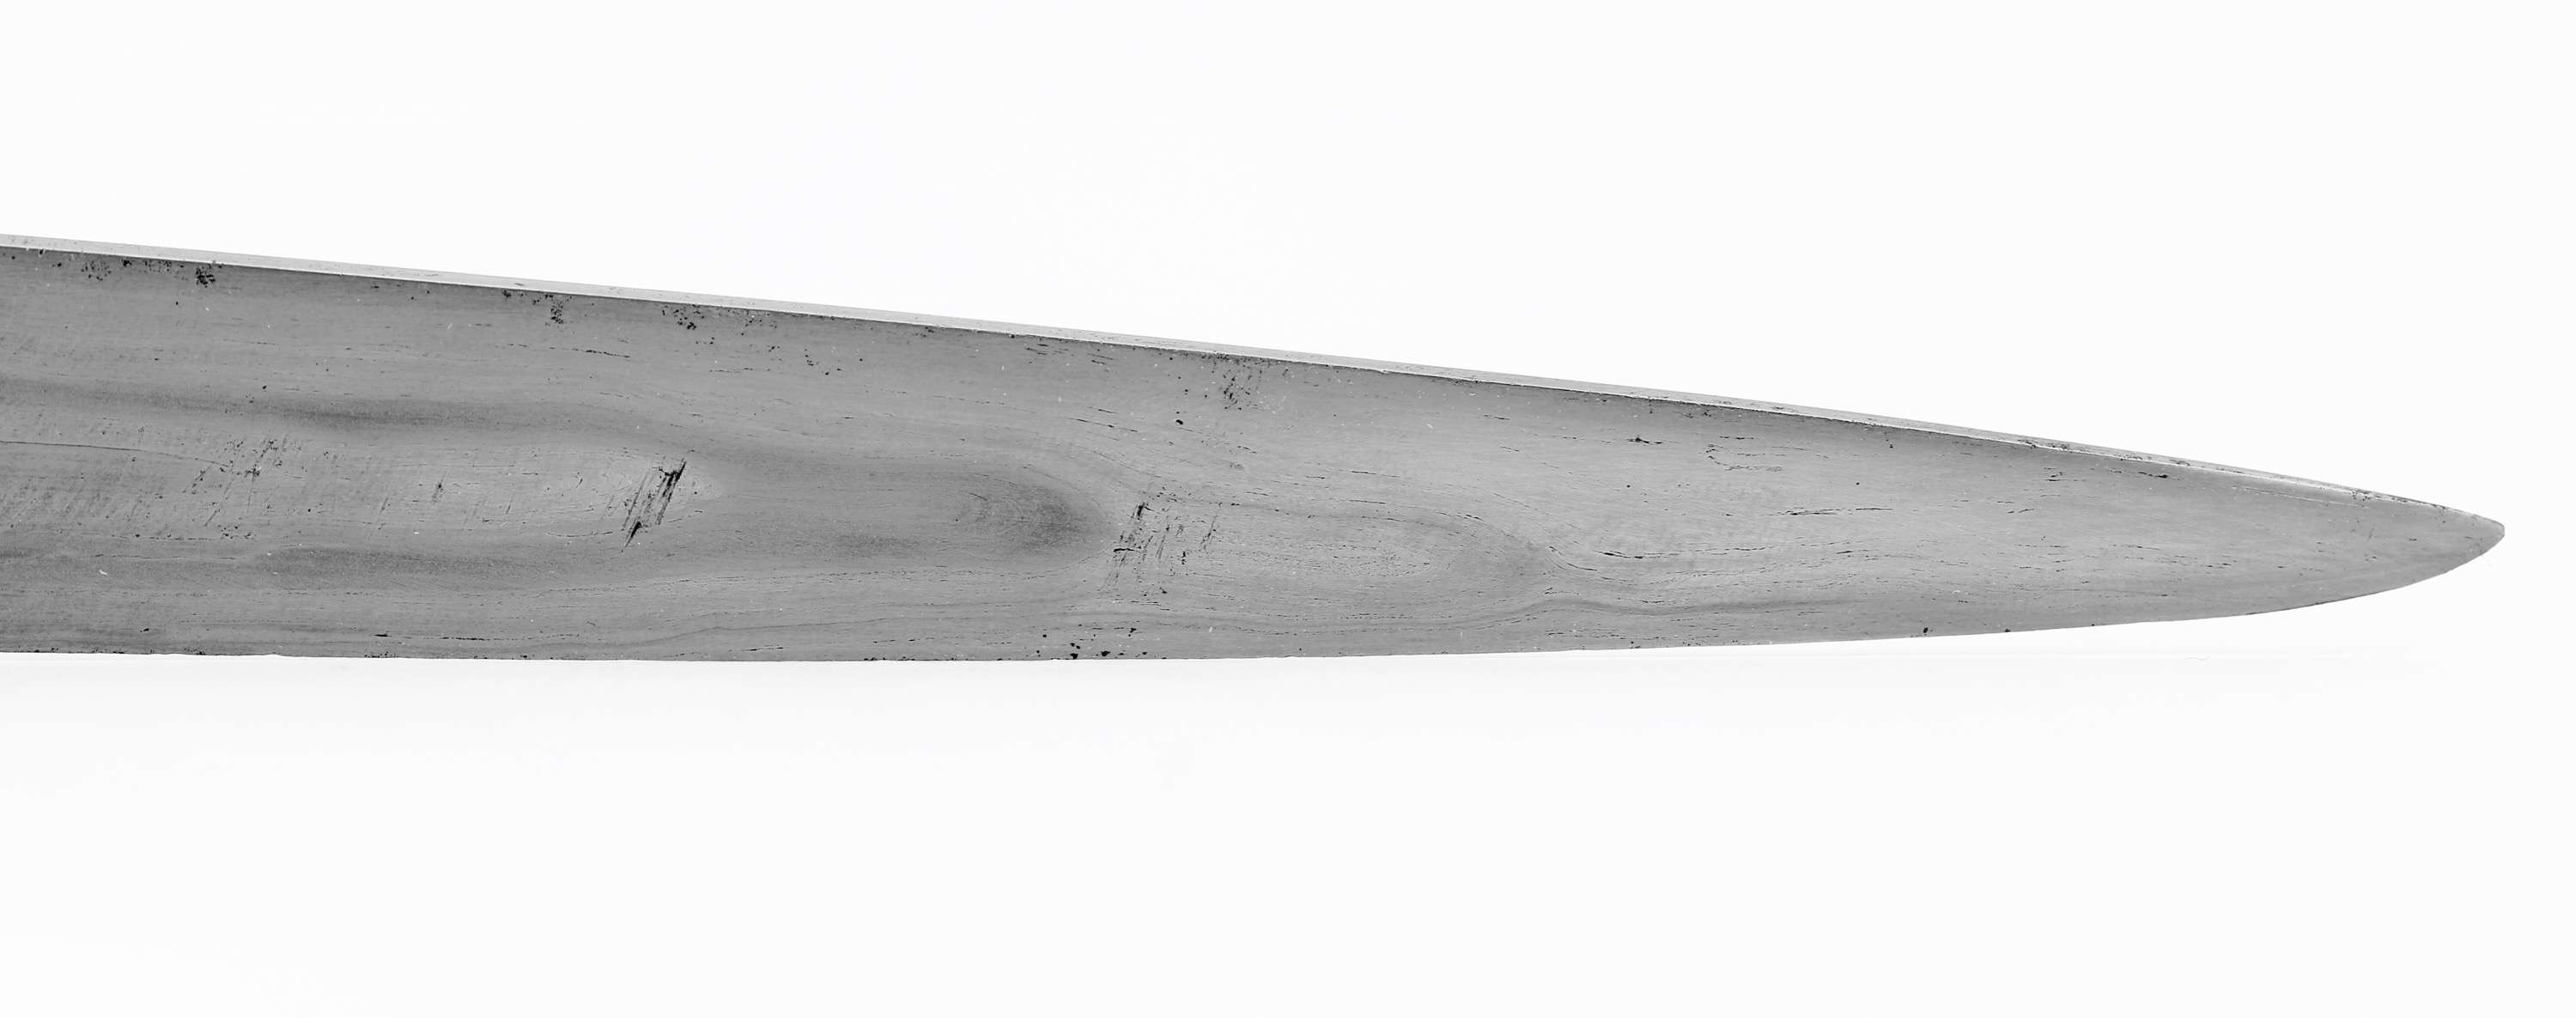 Eastern Tibetan or Jinchuan studded dagger